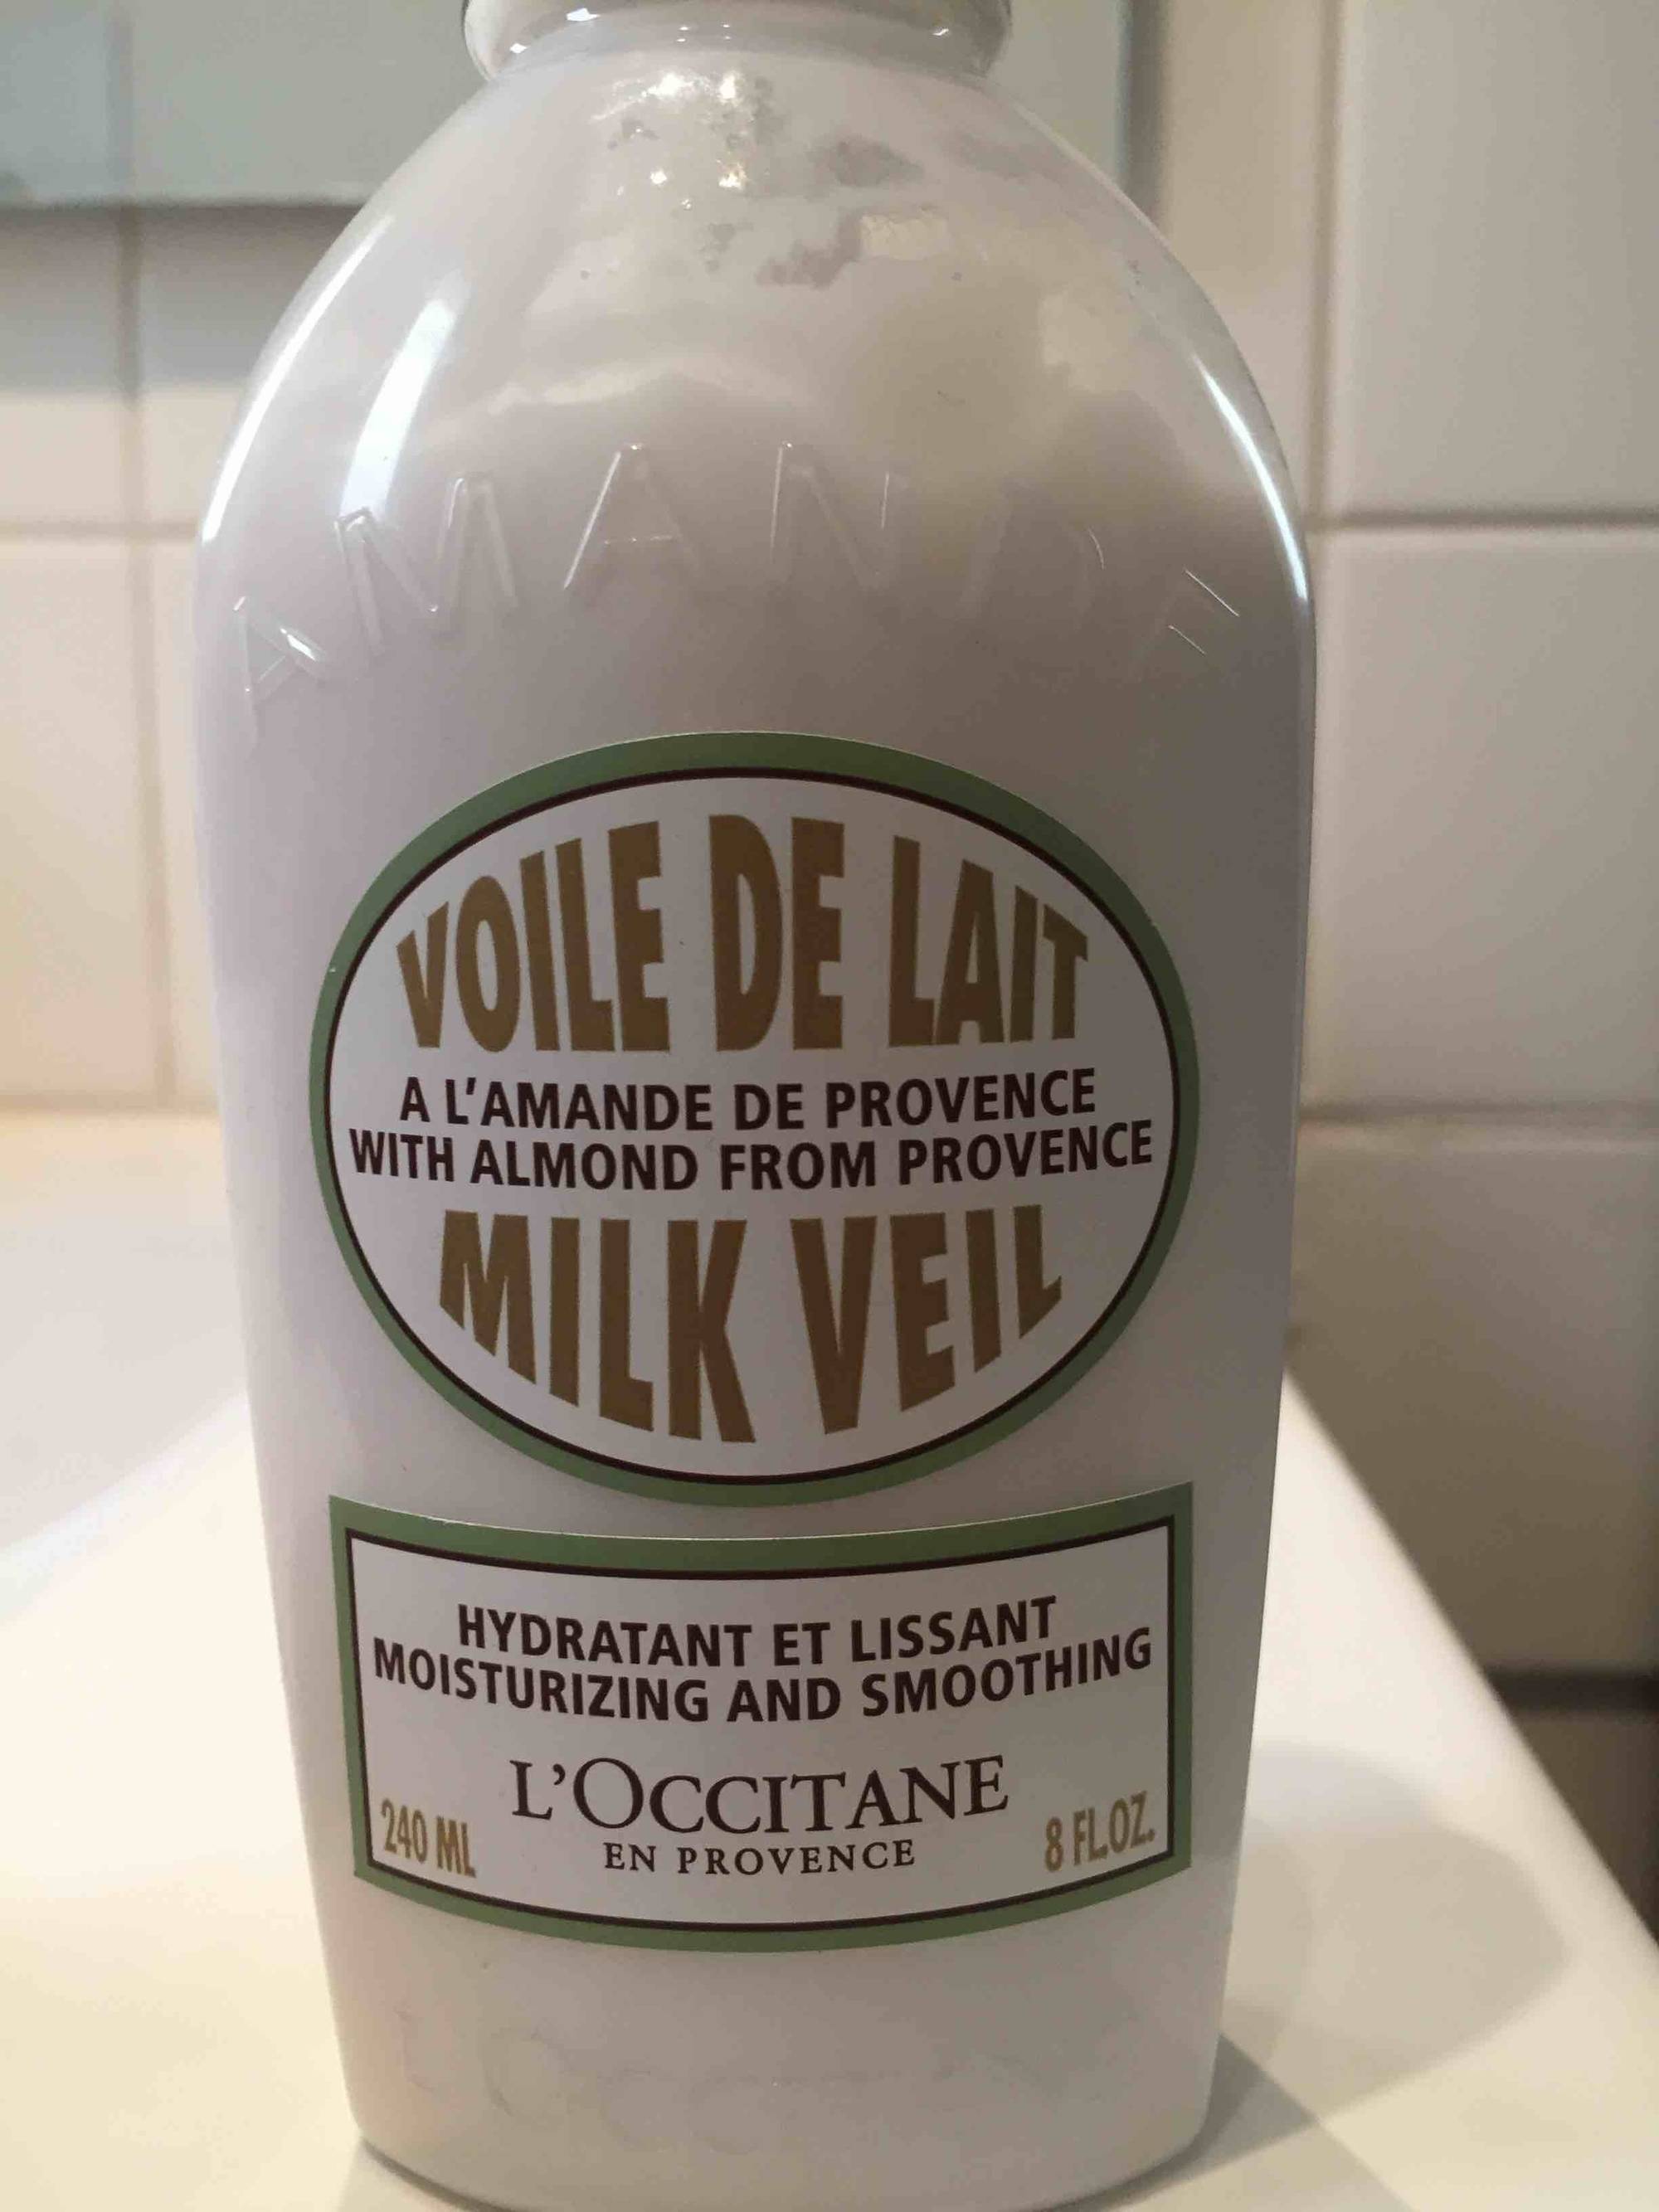 L'OCCITANE - Voile de lait hydratant à l'amande de provence